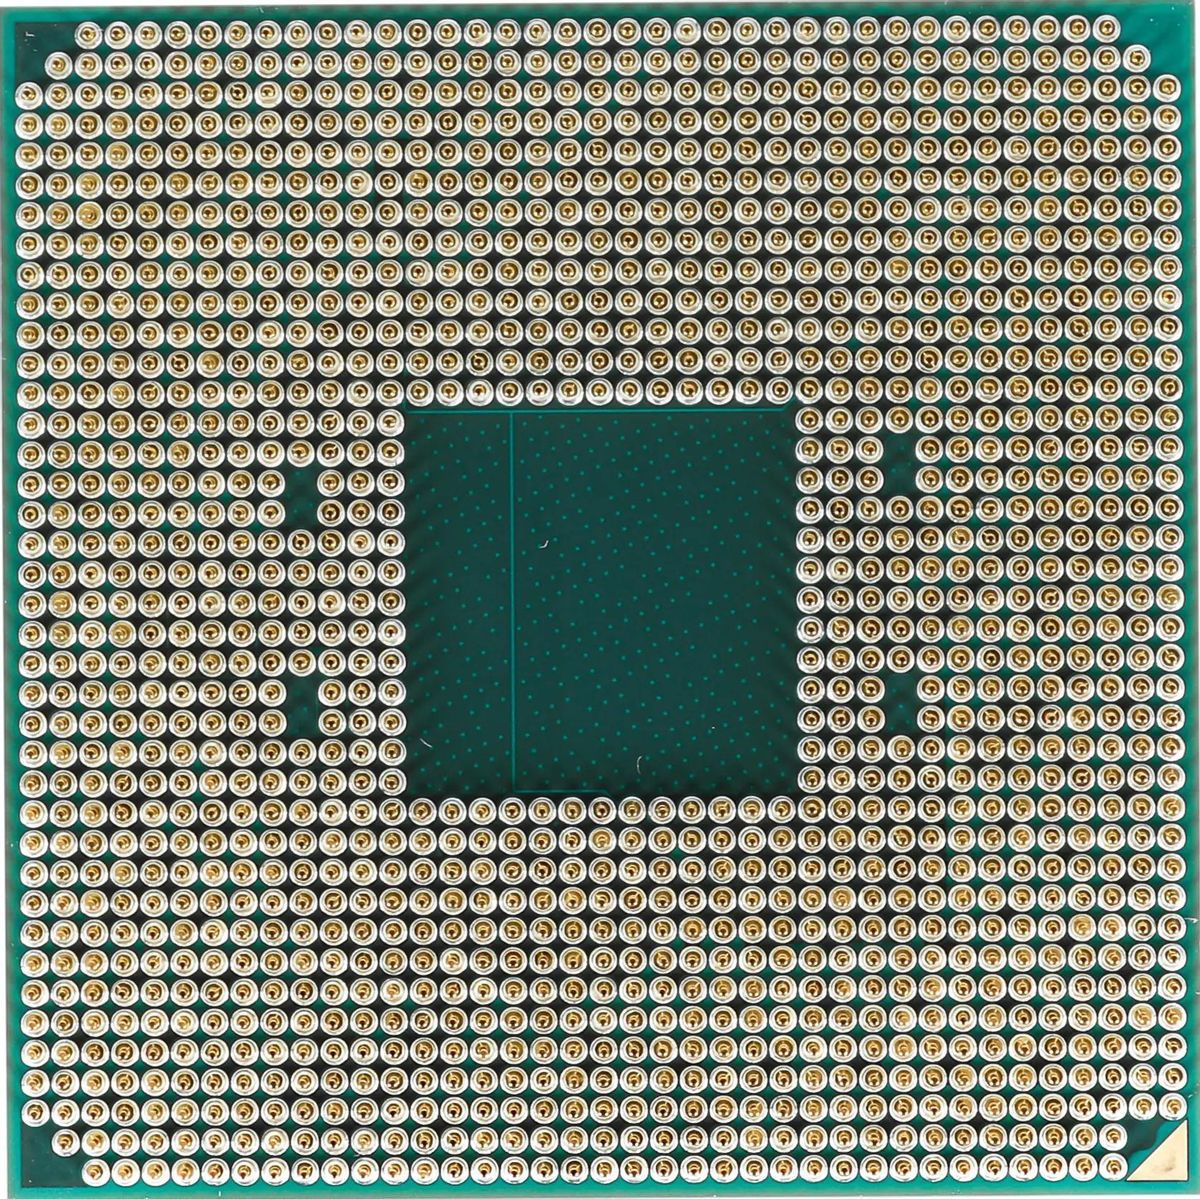 Процессор AMD Ryzen 5 3600 (OEM)— фото №1